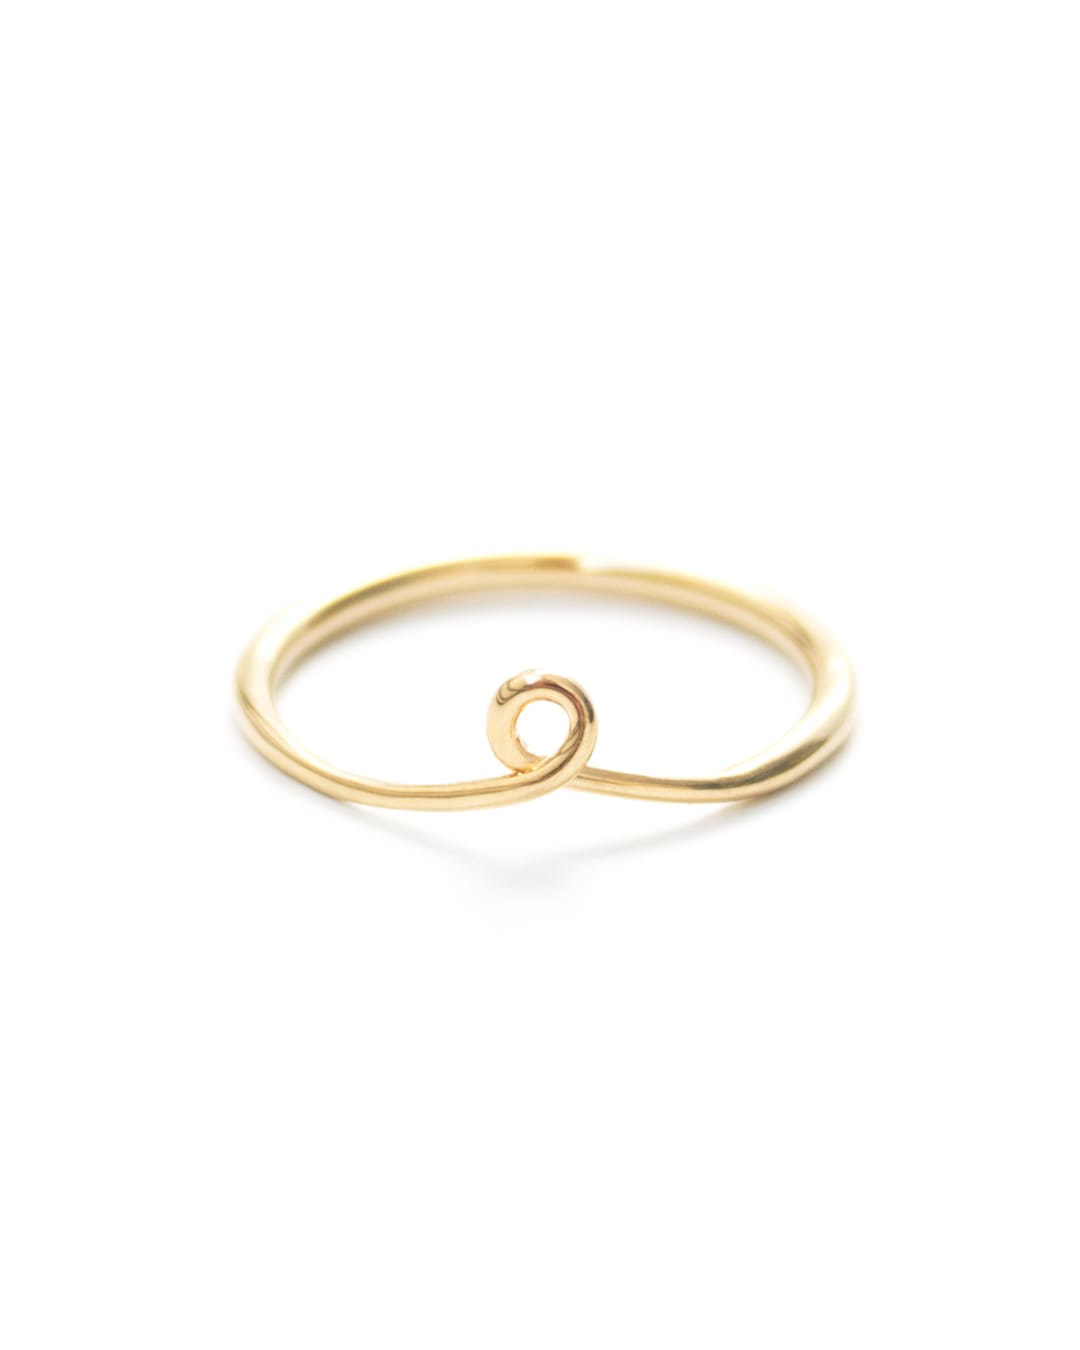 Kolam Gold Ring